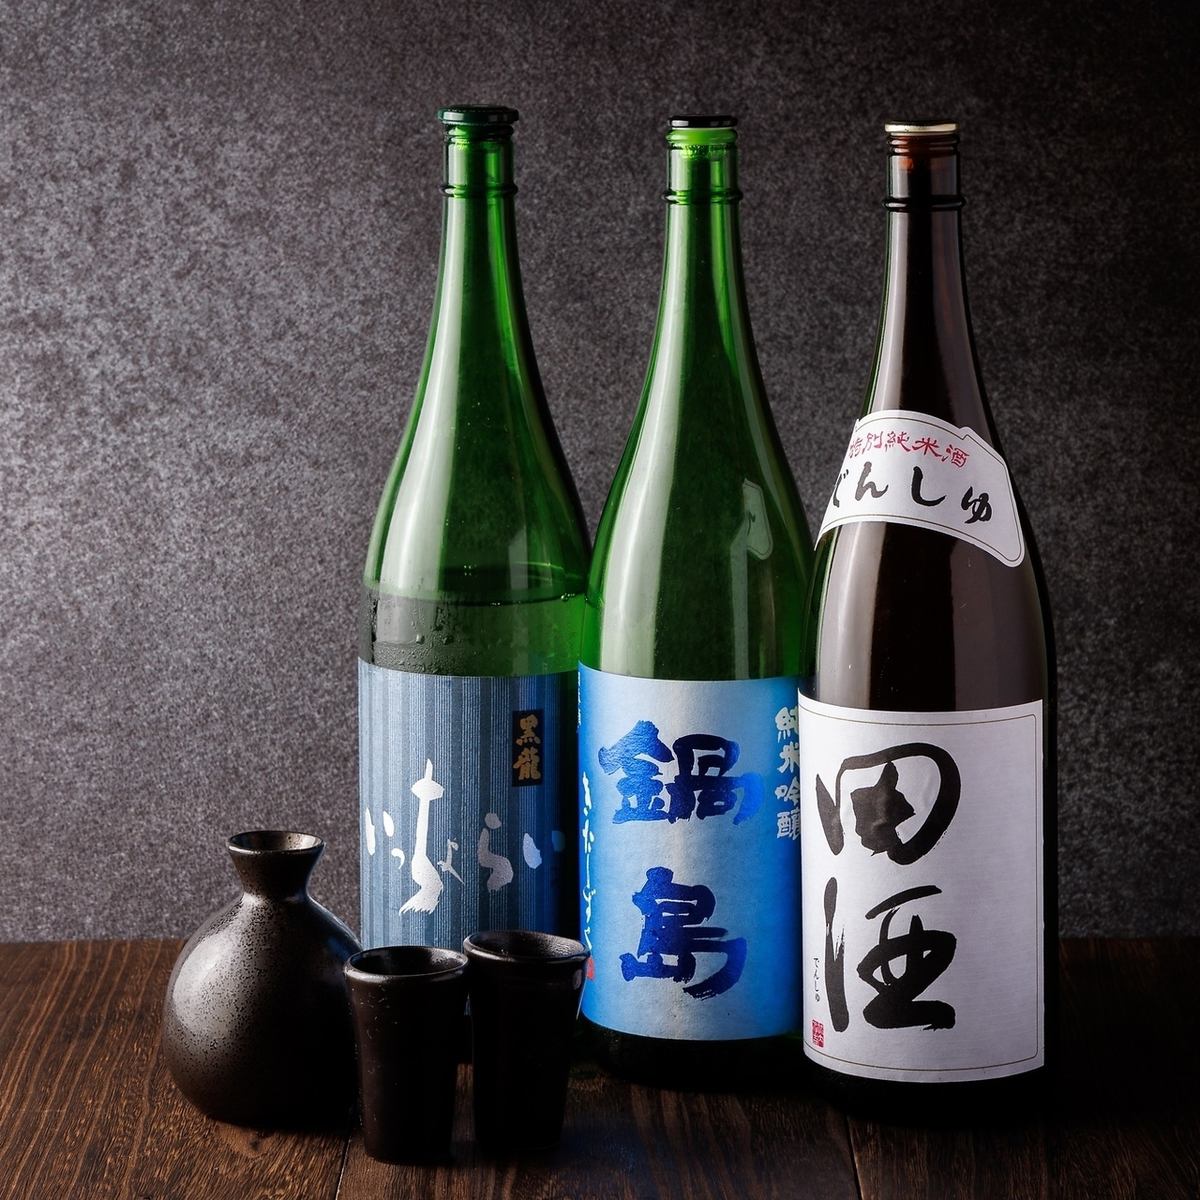 我們提供各種精心挑選的日本酒。